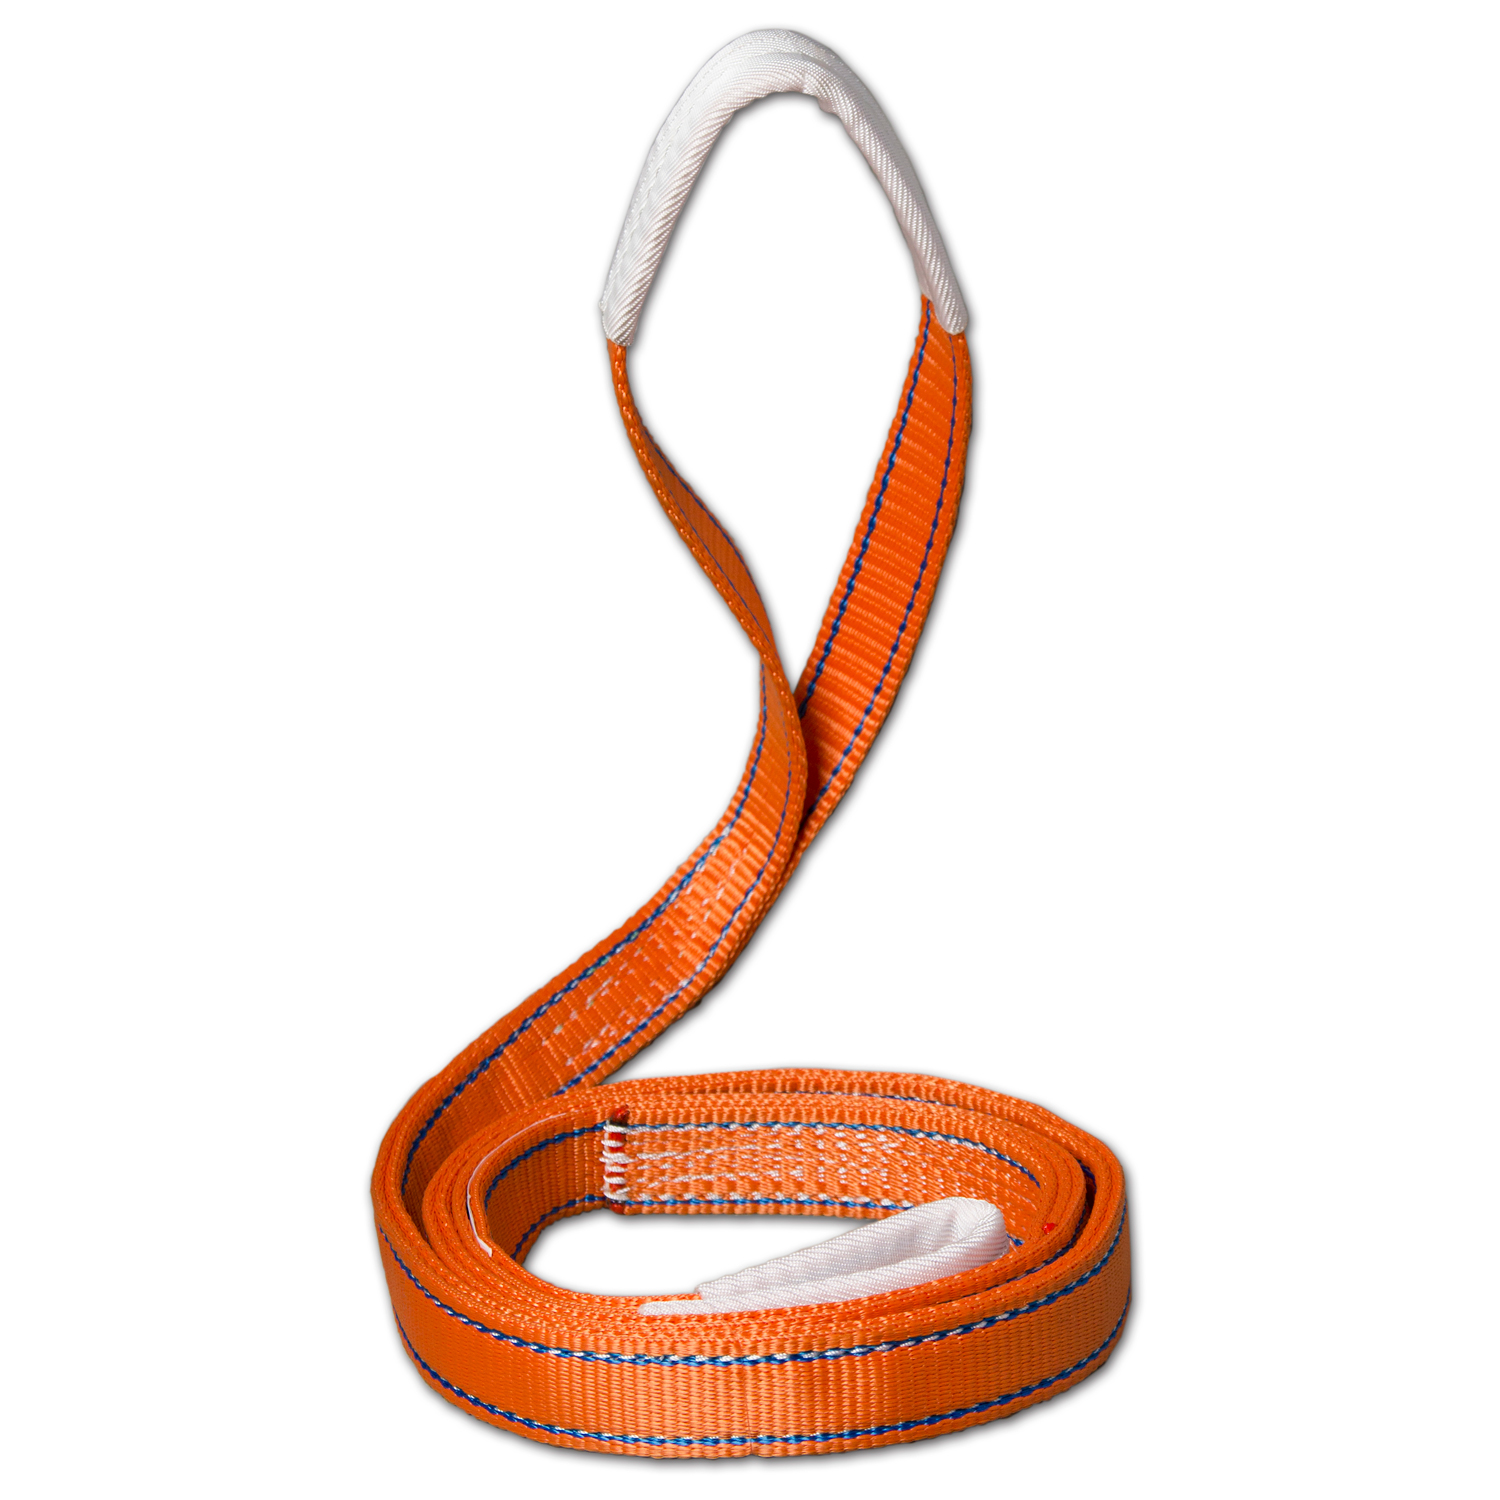 繊維スリング | 製品情報 | 大洋製器工業株式会社